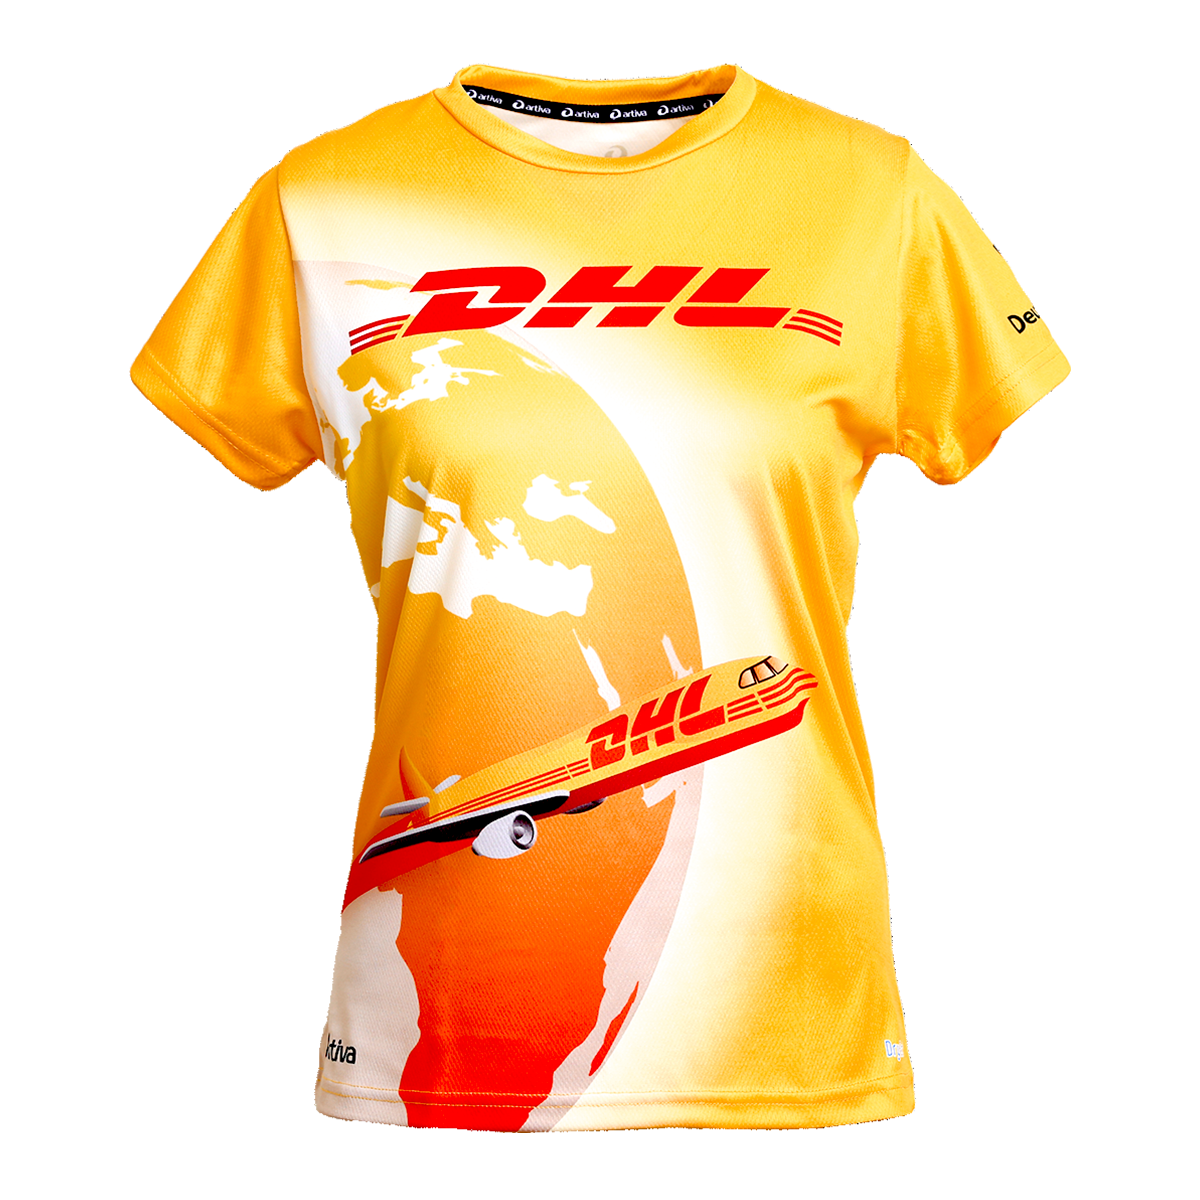 DHL_Runningshirt_front